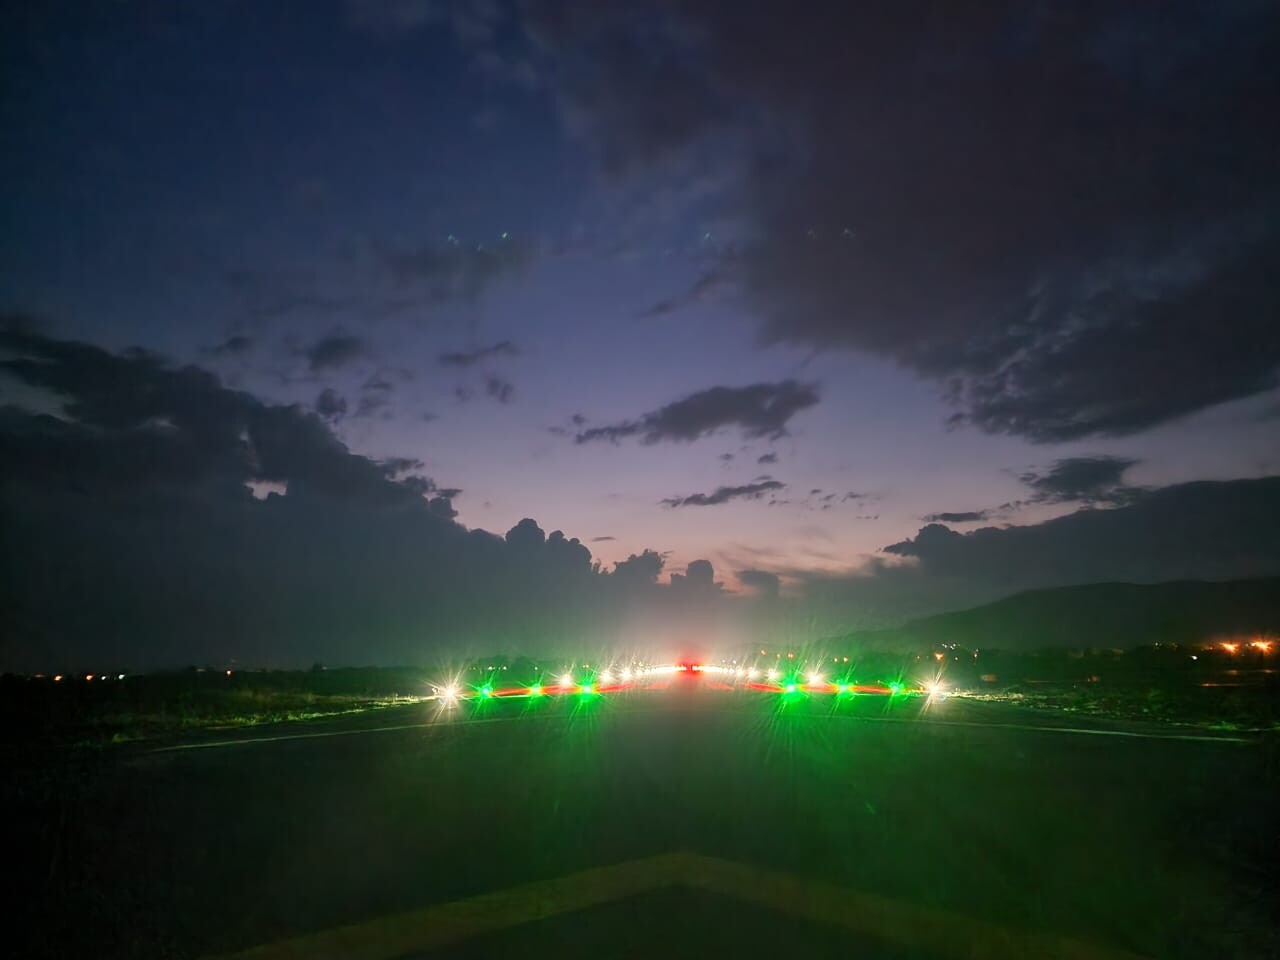 lydia airfield runway at night